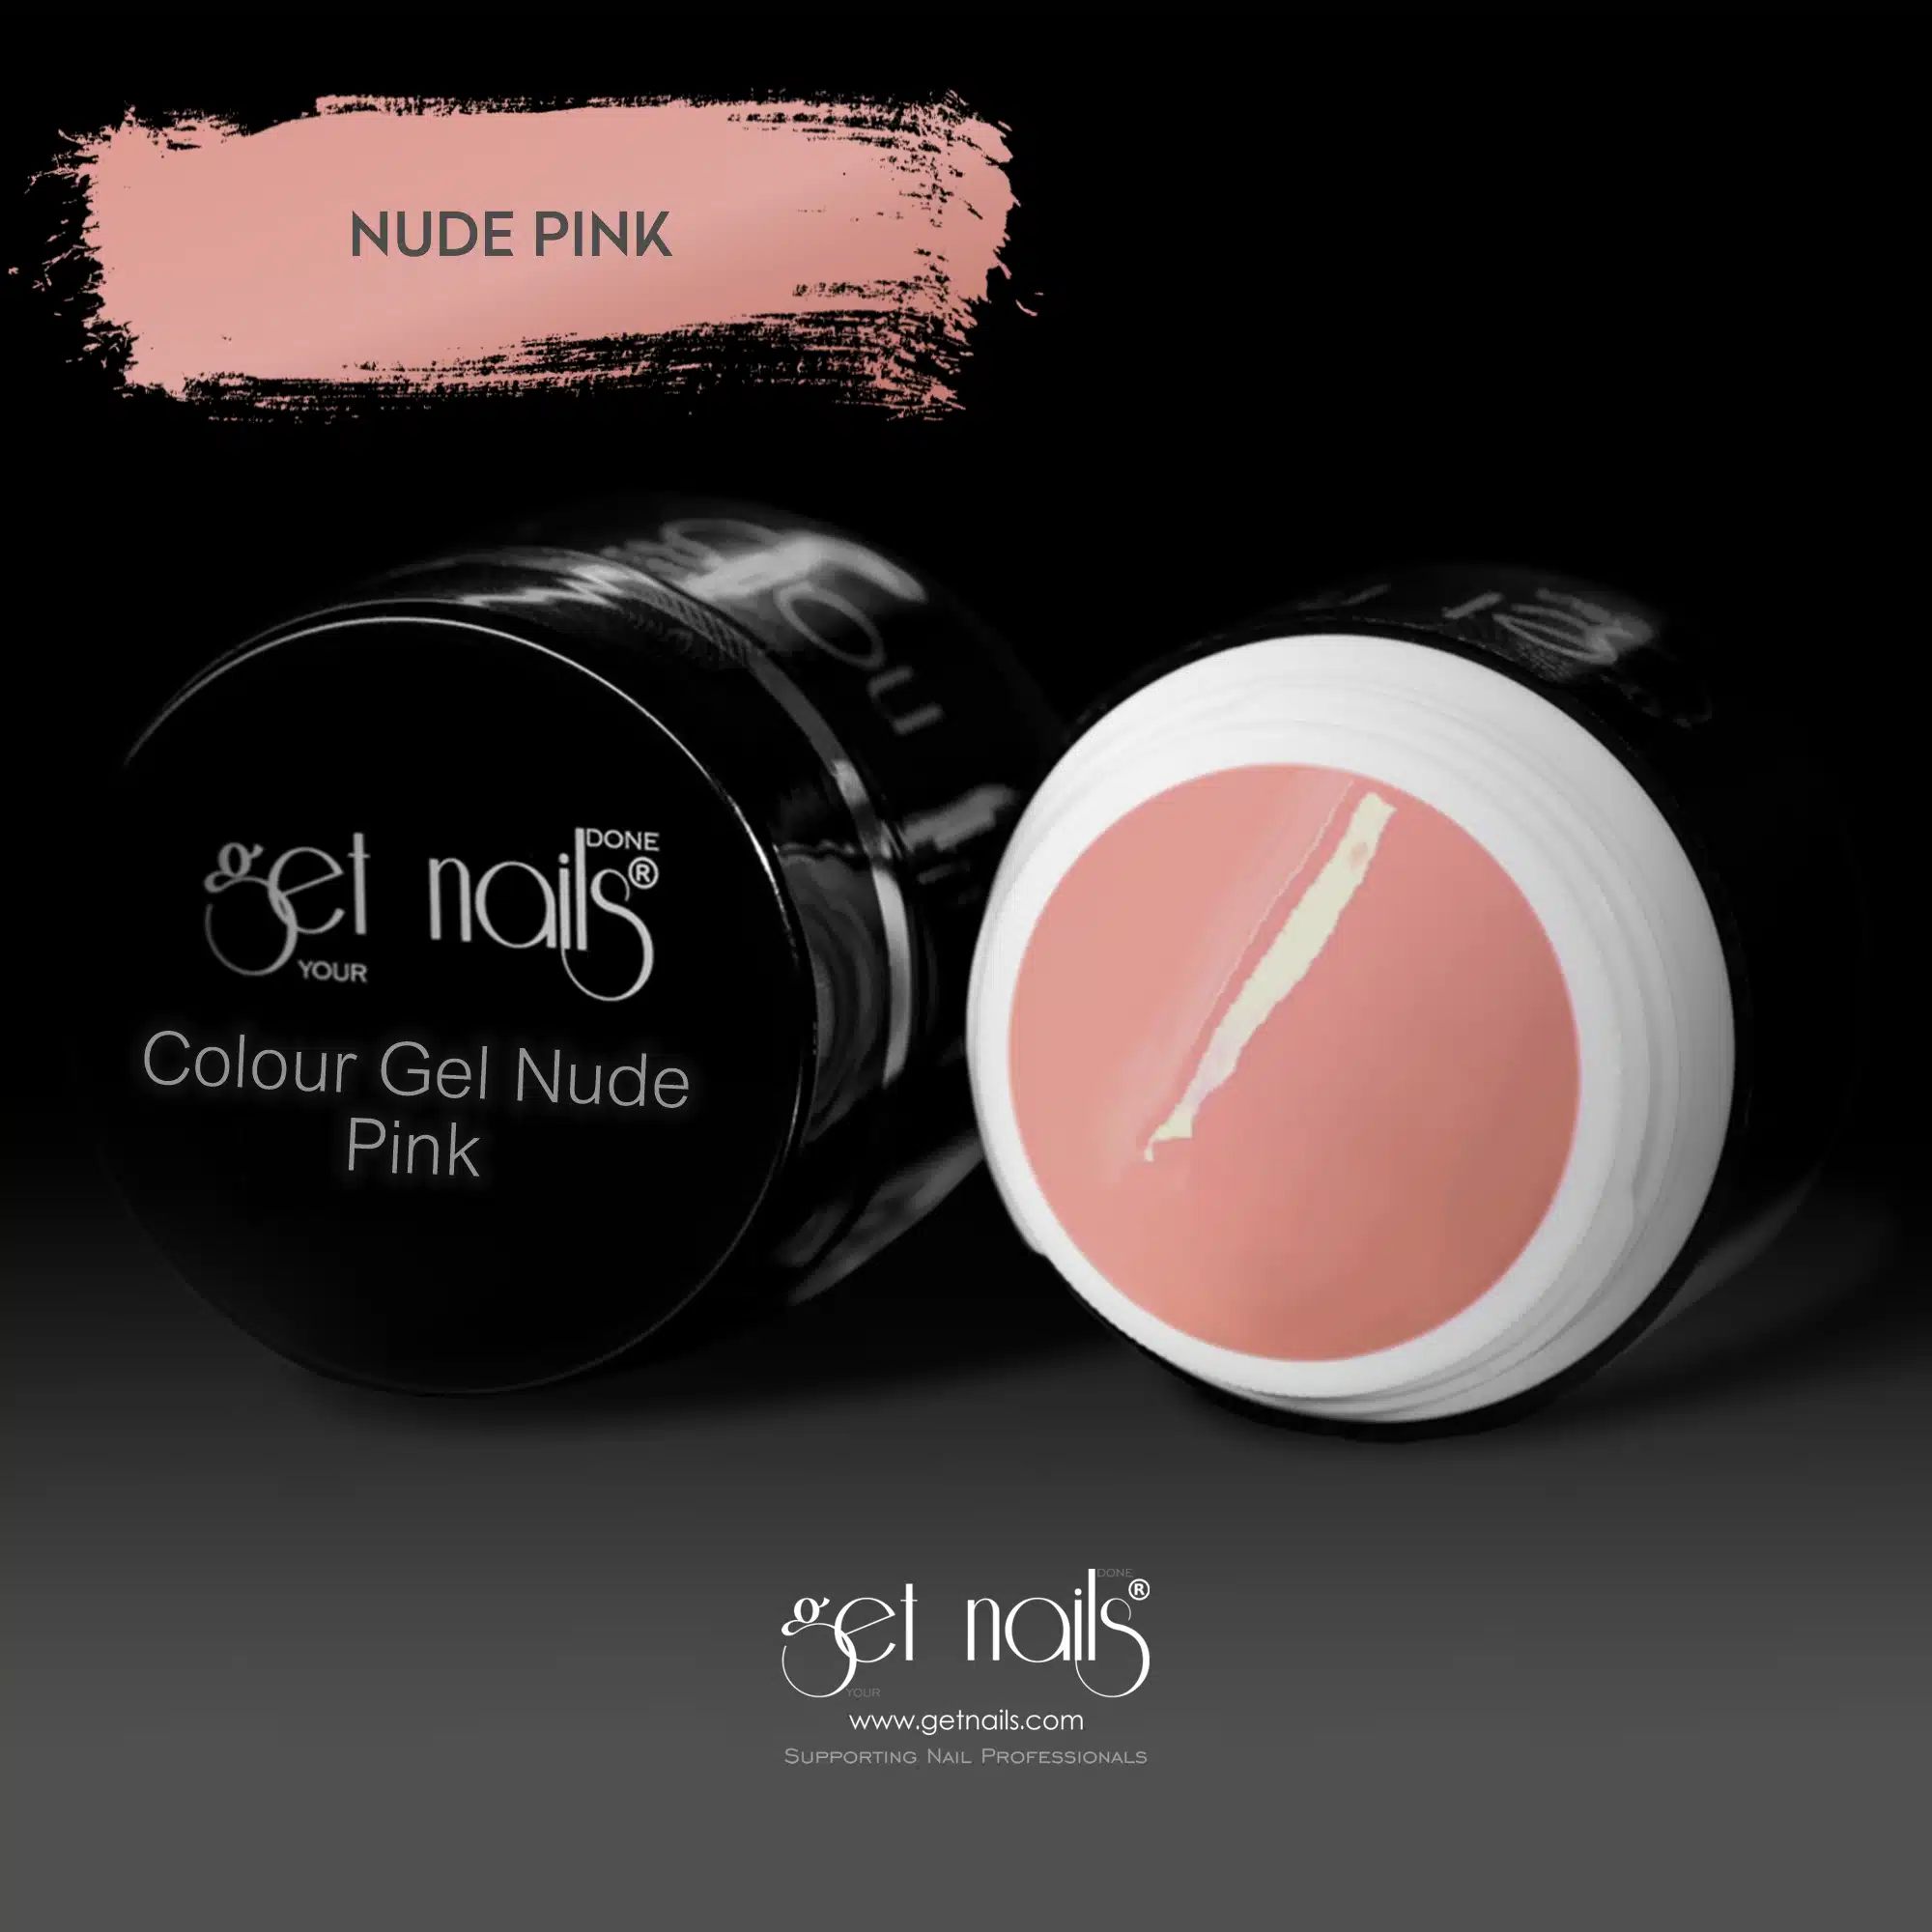 Get Nails Austria - Color Gel Nude Pink 5g